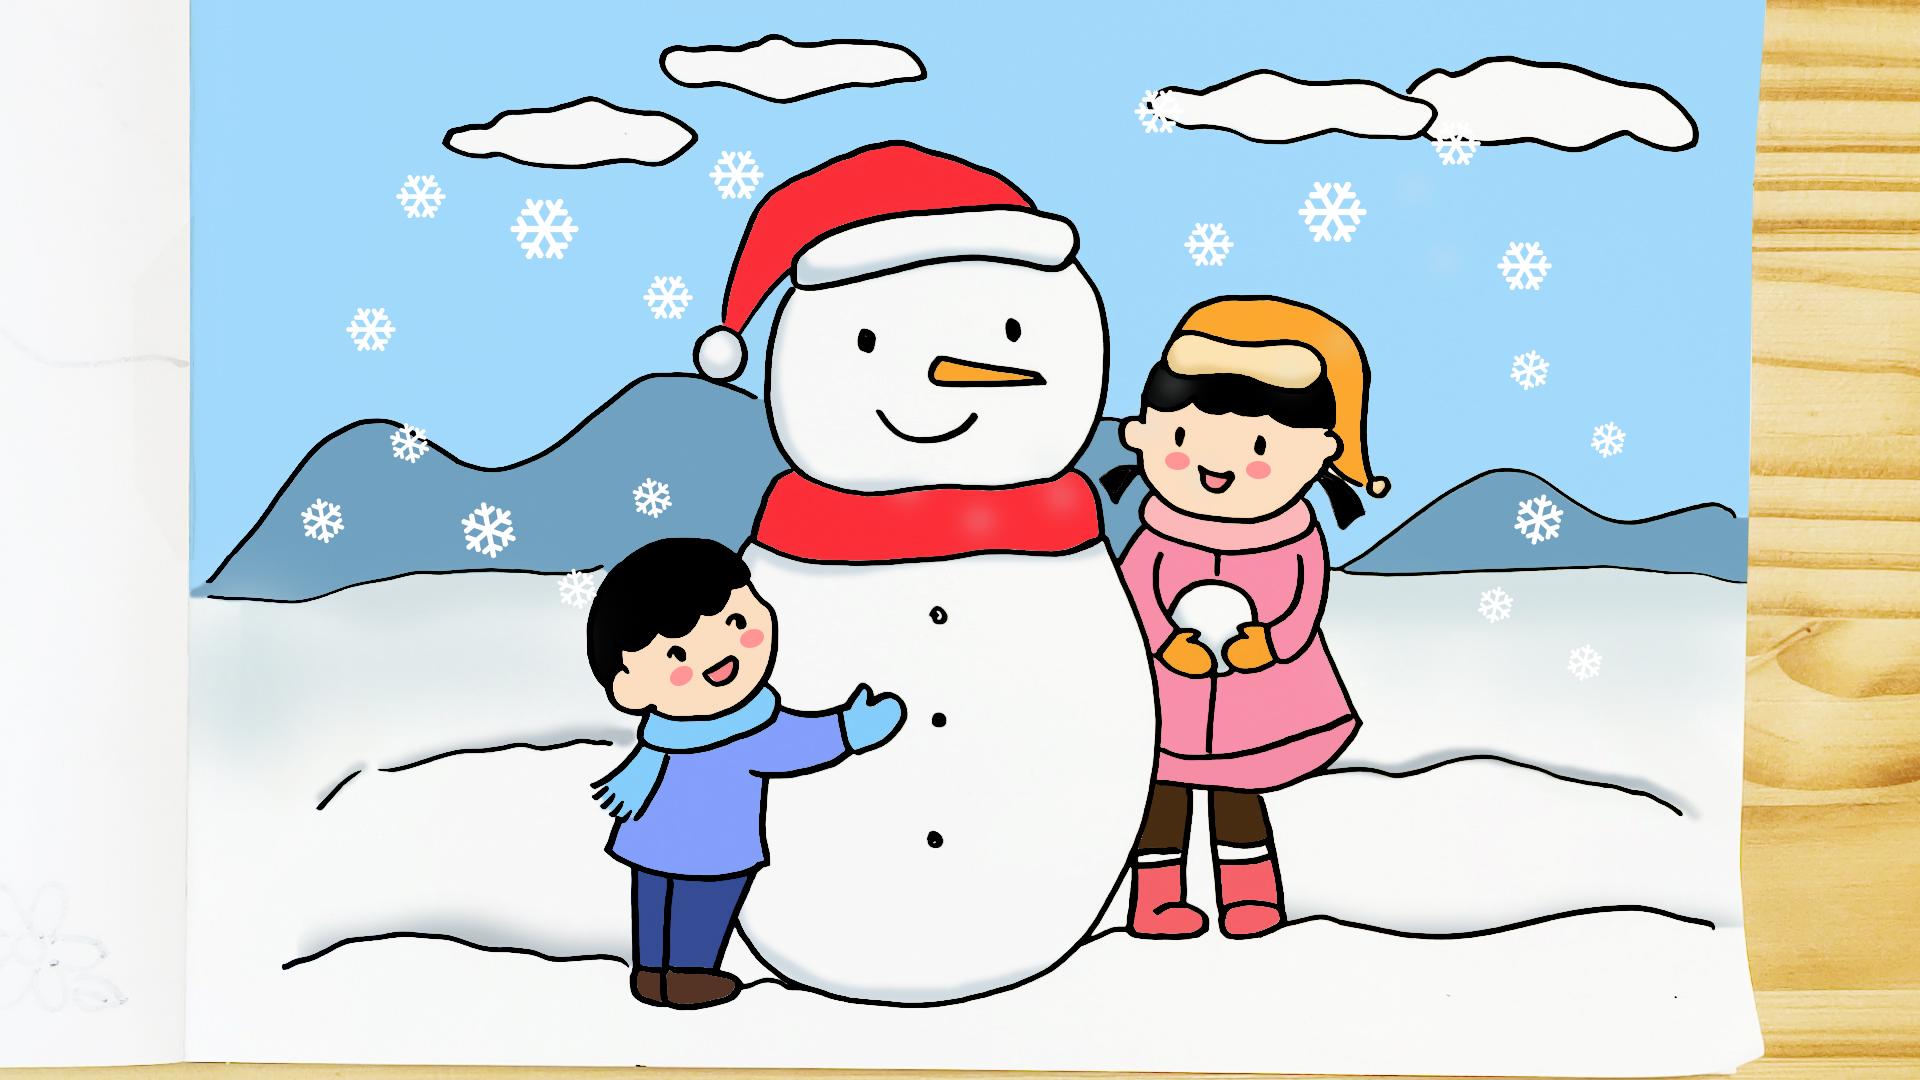 简单又漂亮,家长可收藏备用 今天和萌妹老师一起来画小学生冰雪运动会